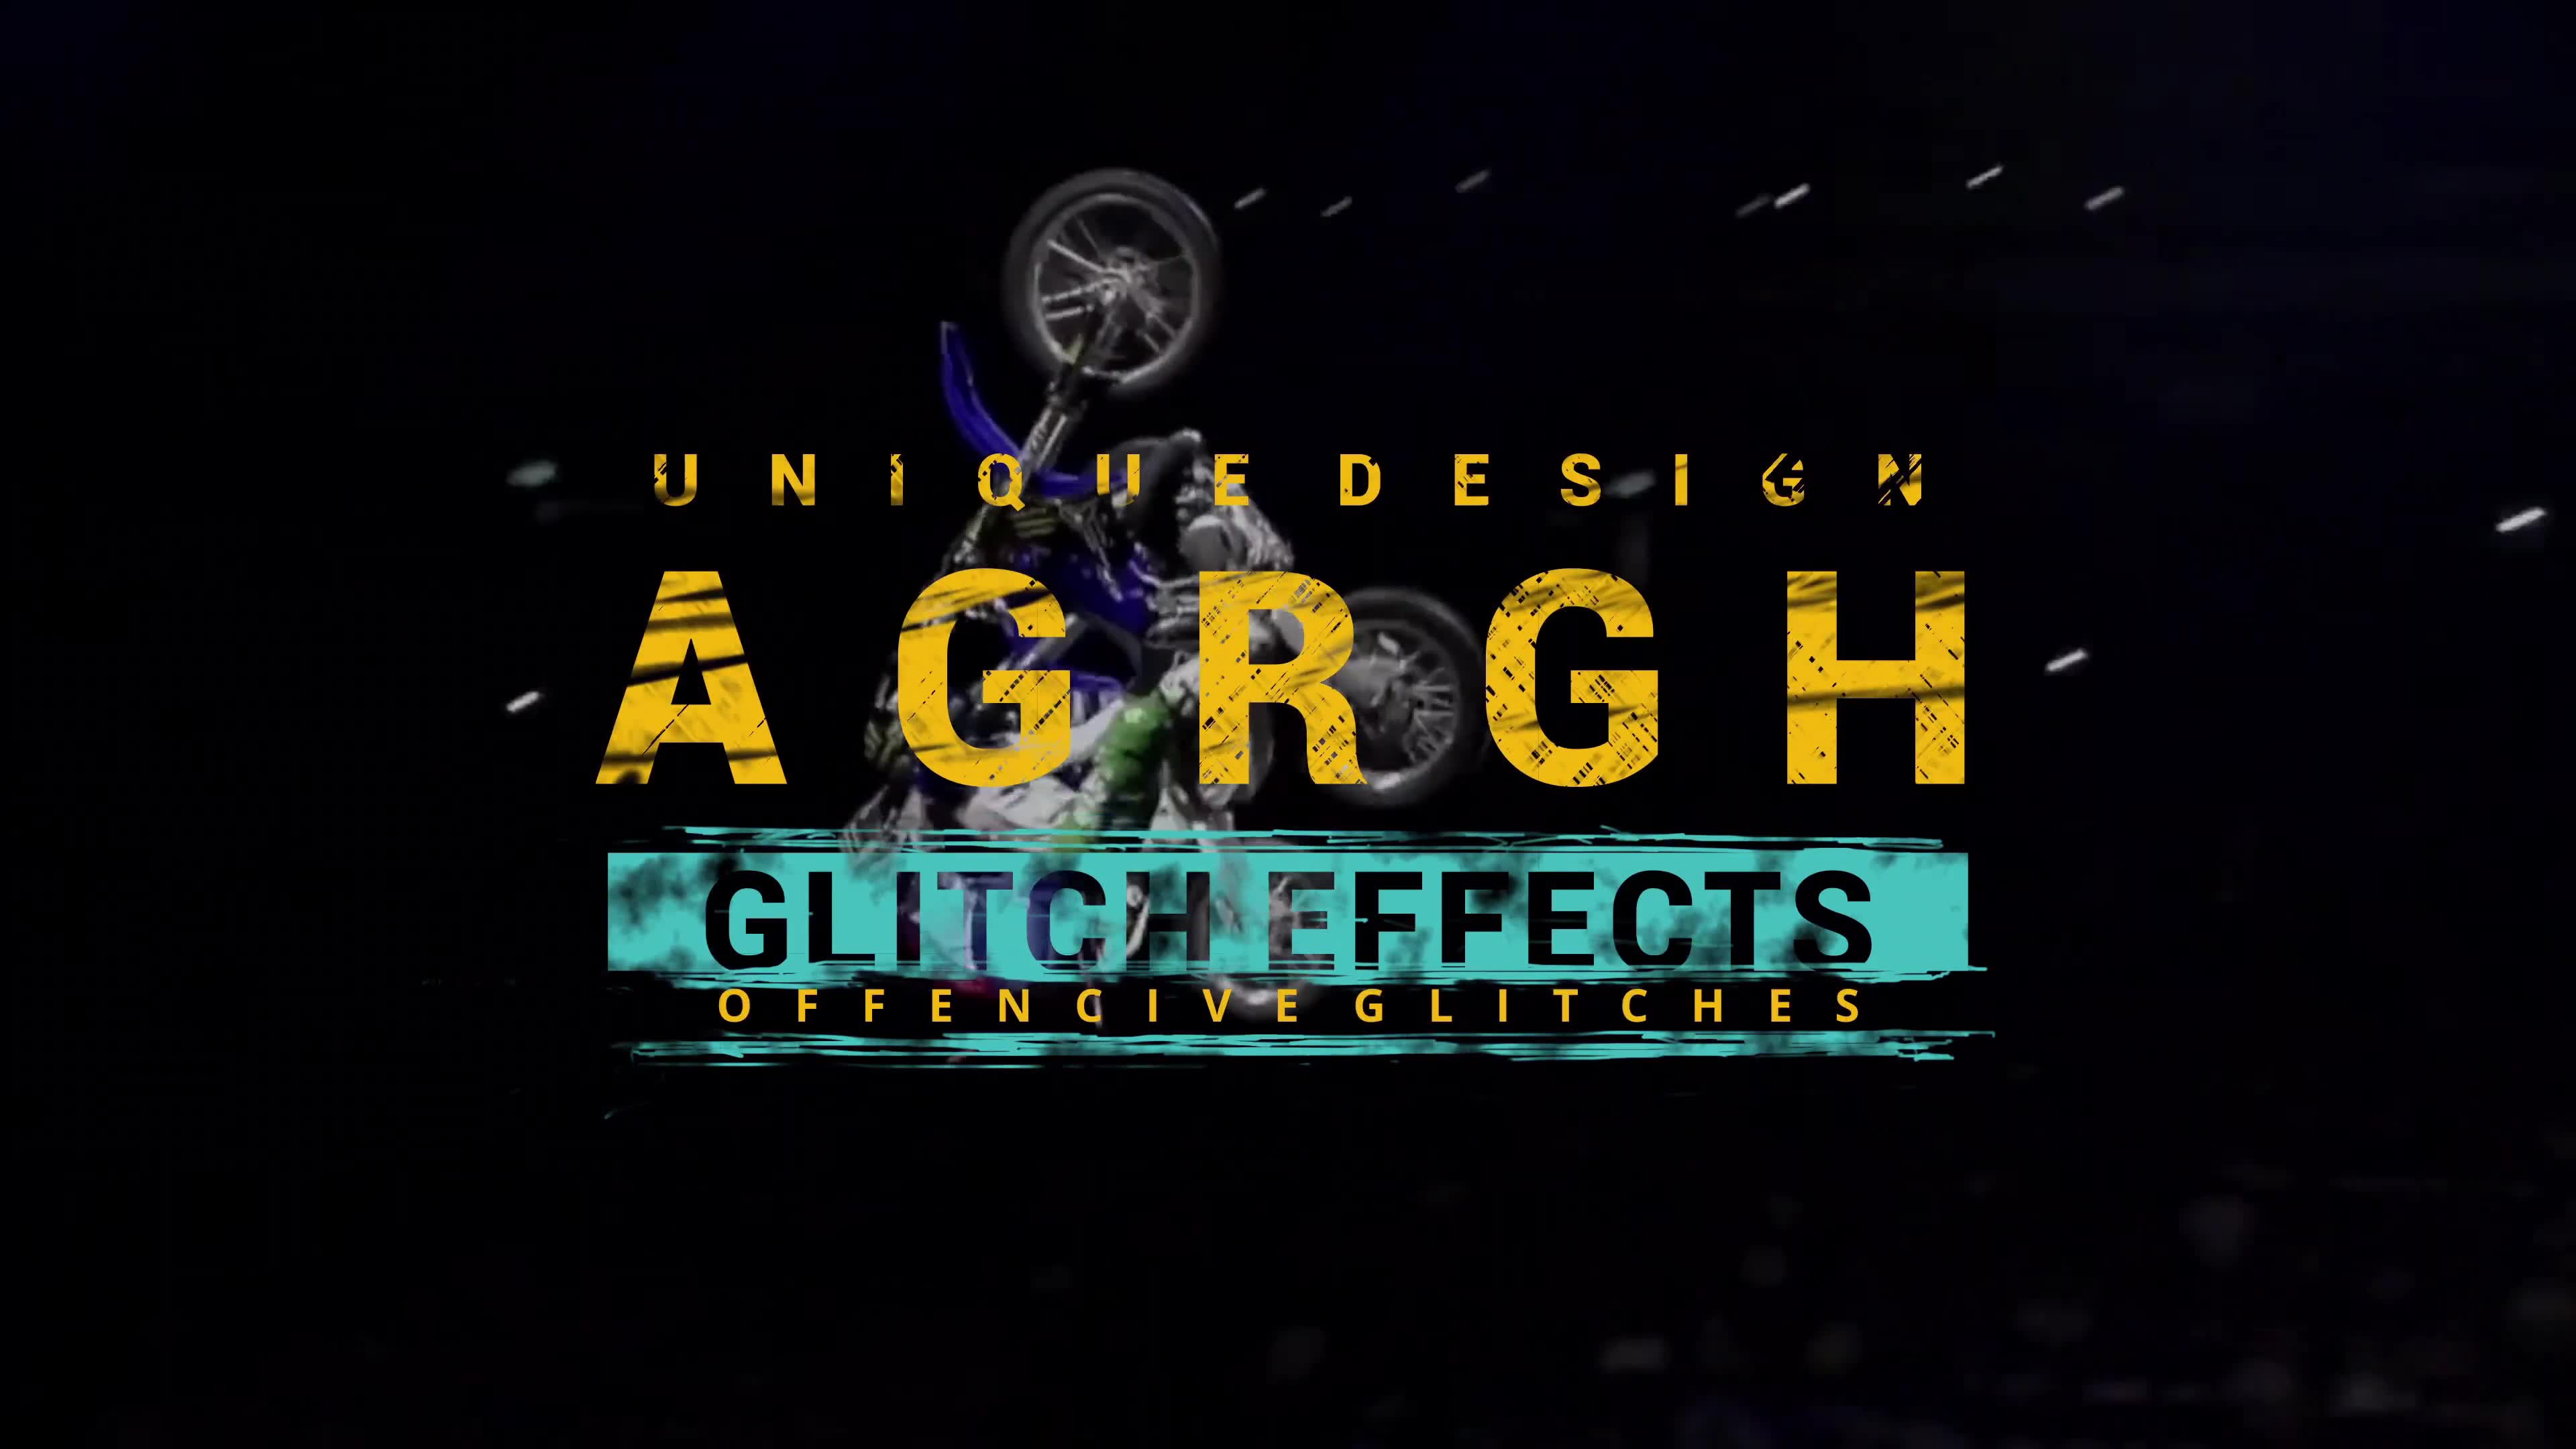 Aggressive Glitch Titles Videohive 32076326 DaVinci Resolve Image 4